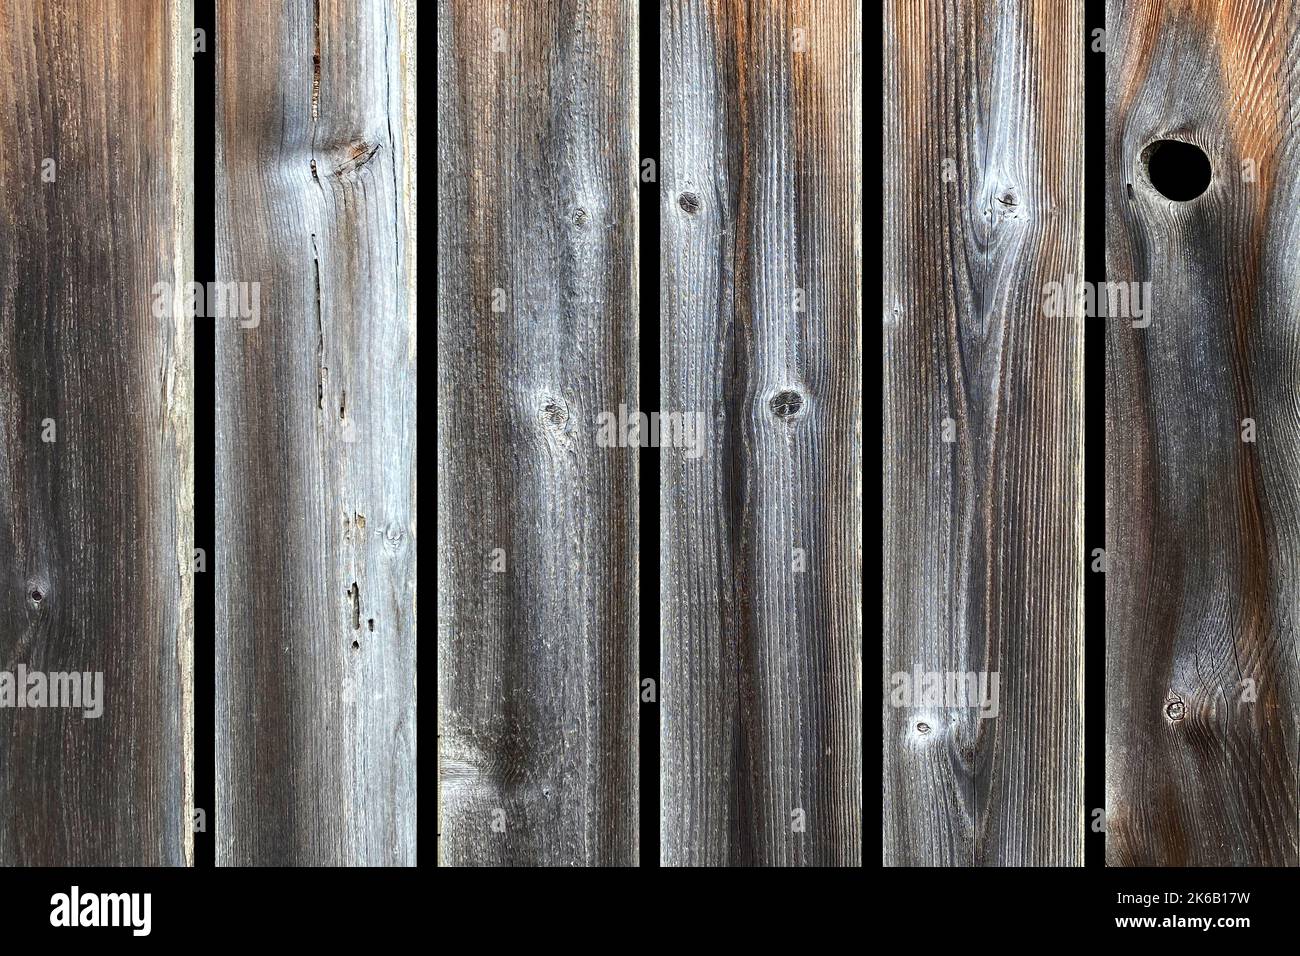 Ein Vintage wilden Westen hölzerne Zaun Tür hängen Holzhütte Scheune Ranch Ställe Bord Bauernhof Prärie Pionier Plank Holz Stockfoto